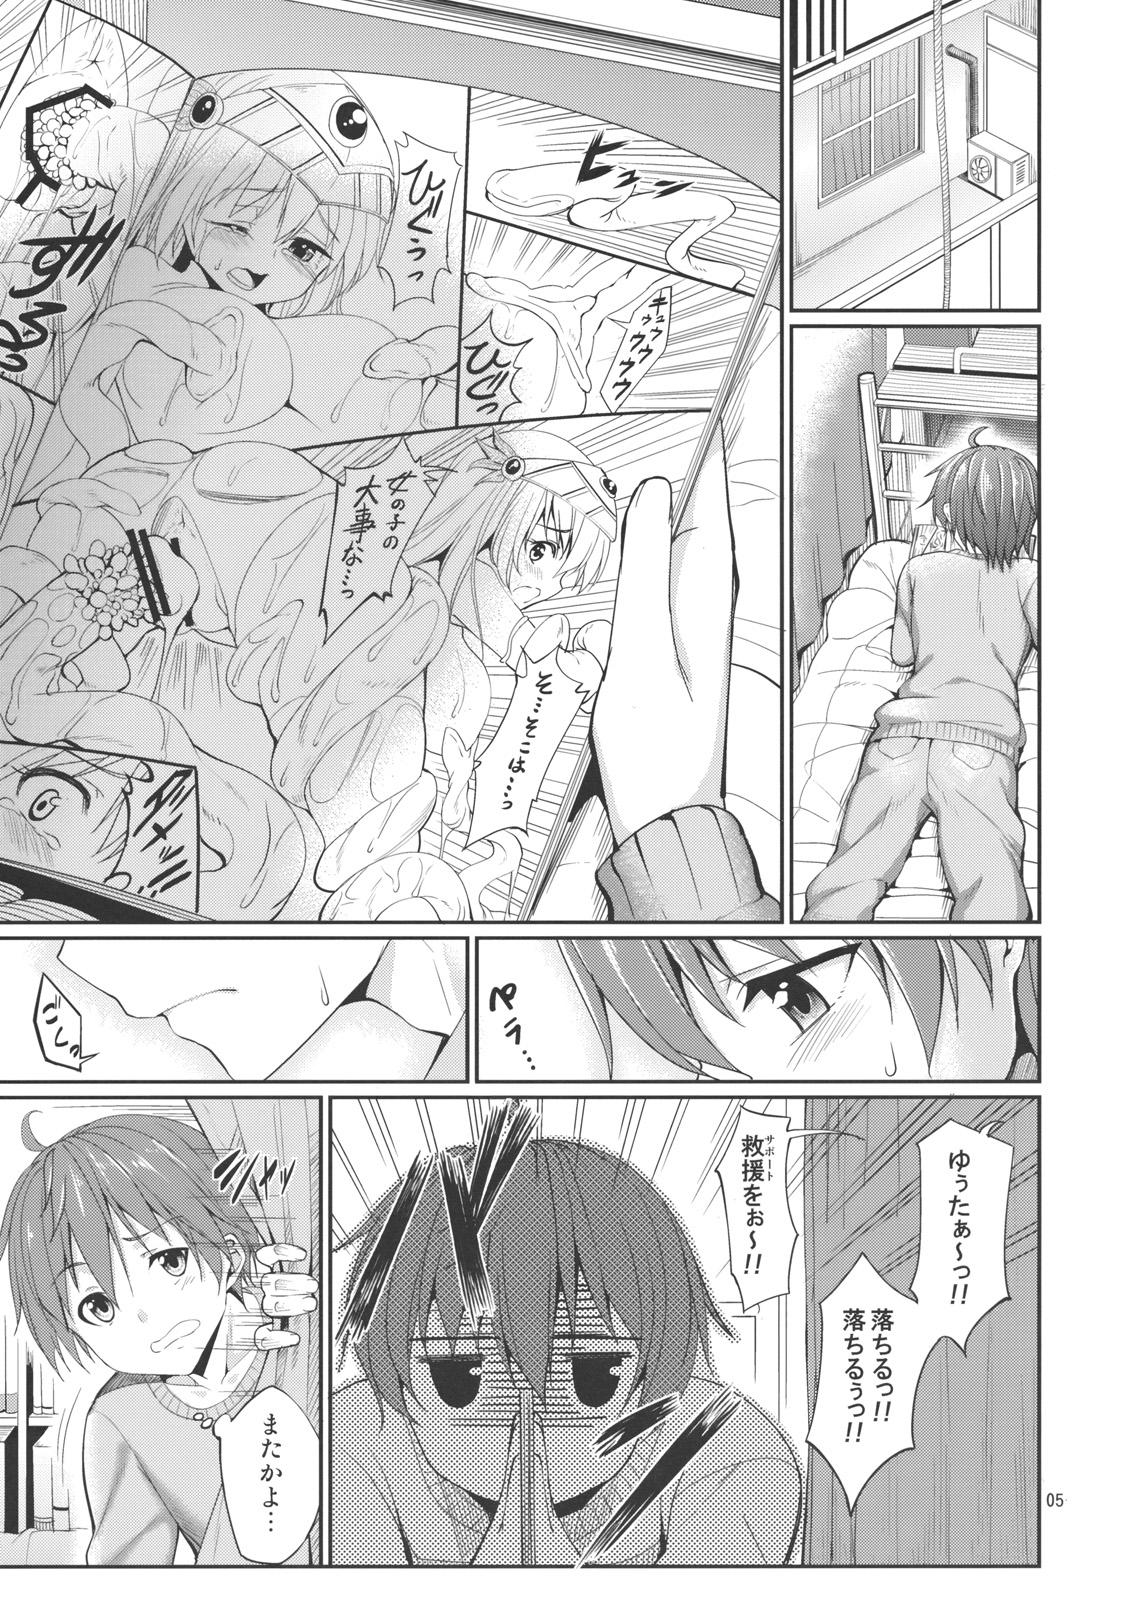 Follando Rikka to Shokushu to Mousou Settei! - Chuunibyou demo koi ga shitai Socks - Page 4